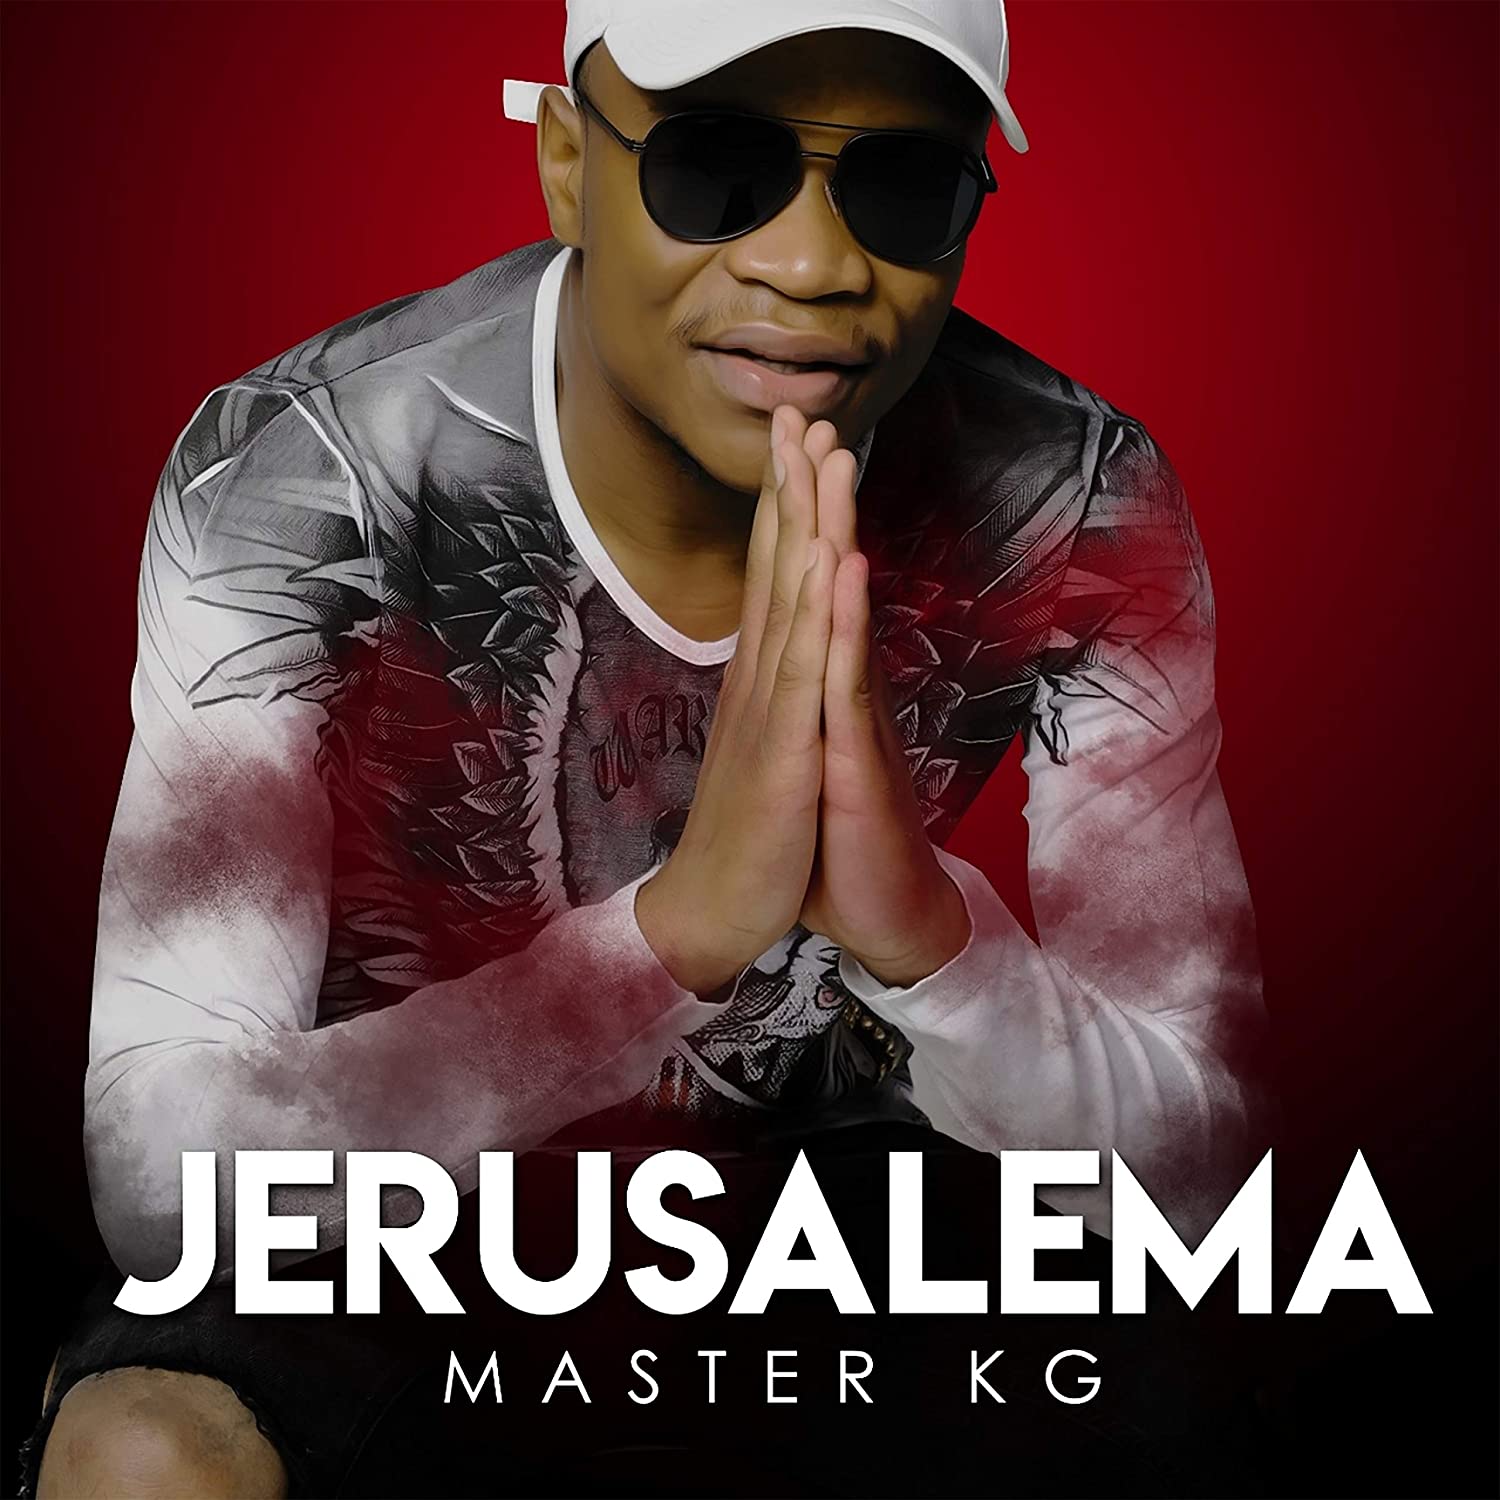 Jerusalema master kg. Master kg ft. Nomcebo Zikode - Jerusalema. Jerusalema Nomcebo Zikode. Master kg feat. Nomcebo Zikode - Jerusalema (feat. Nomcebo Zikode). Master kg Jerusalem.